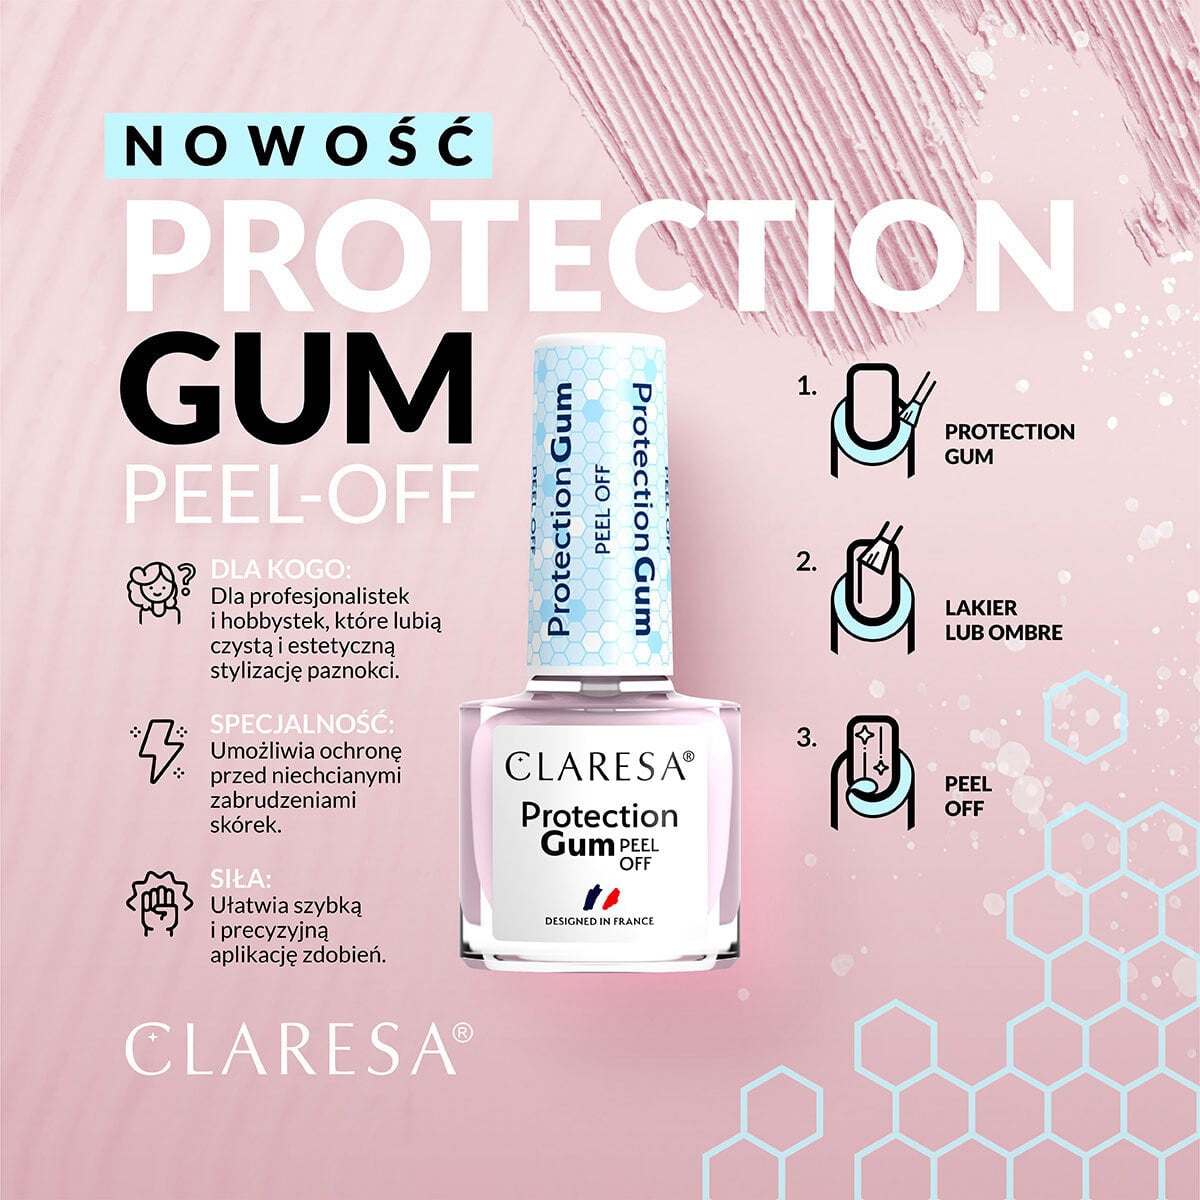 CLARESA Protection Gum Peel Off